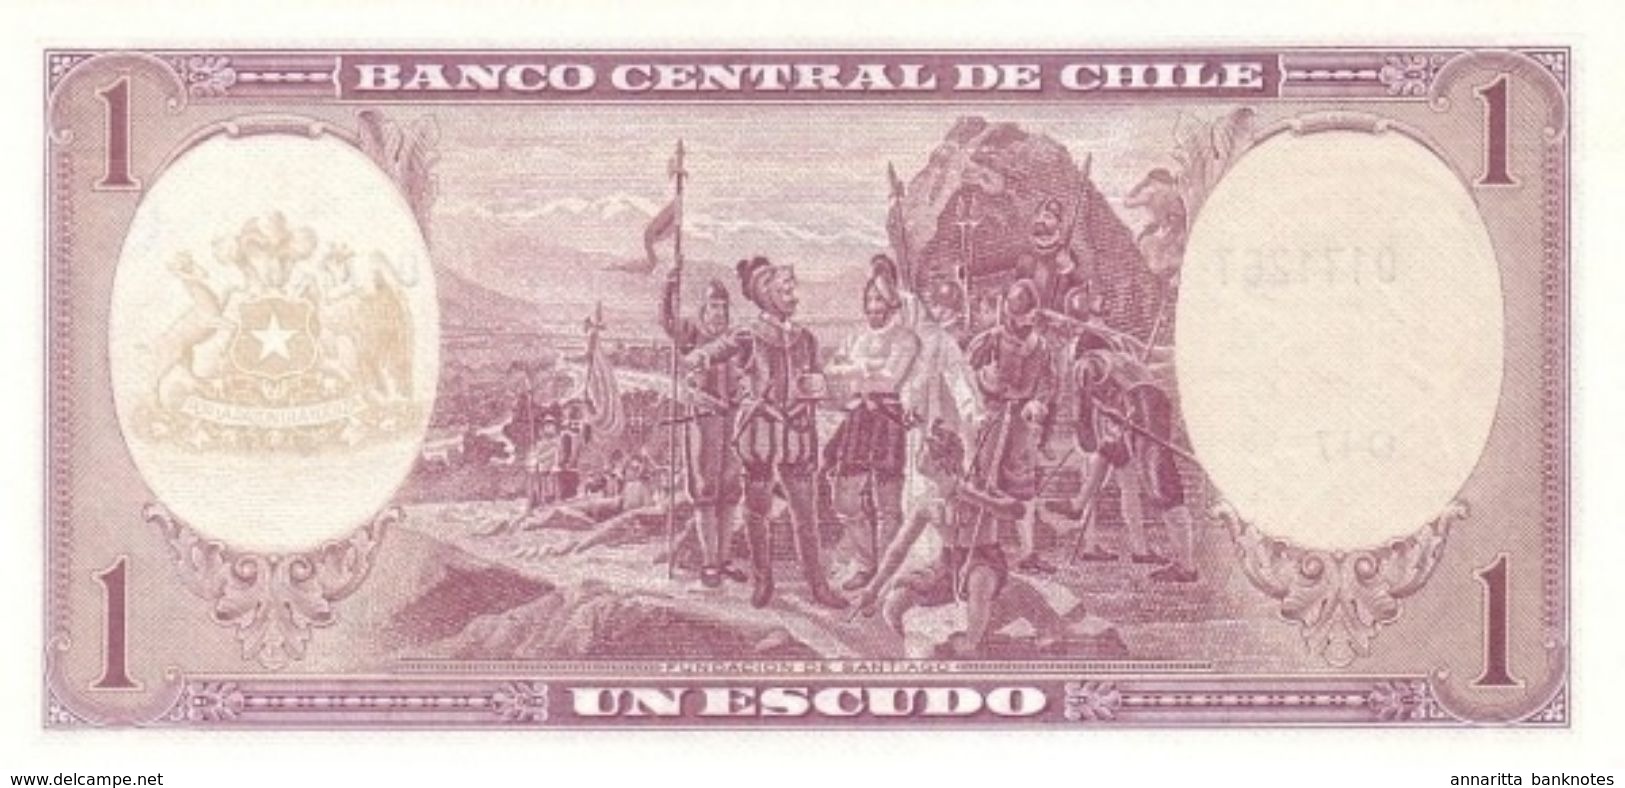 CHILE 1 ESCUDO ND (1964) P-136a UNC SIGN. MASSAD & IBANEZ [CL271a] - Cile